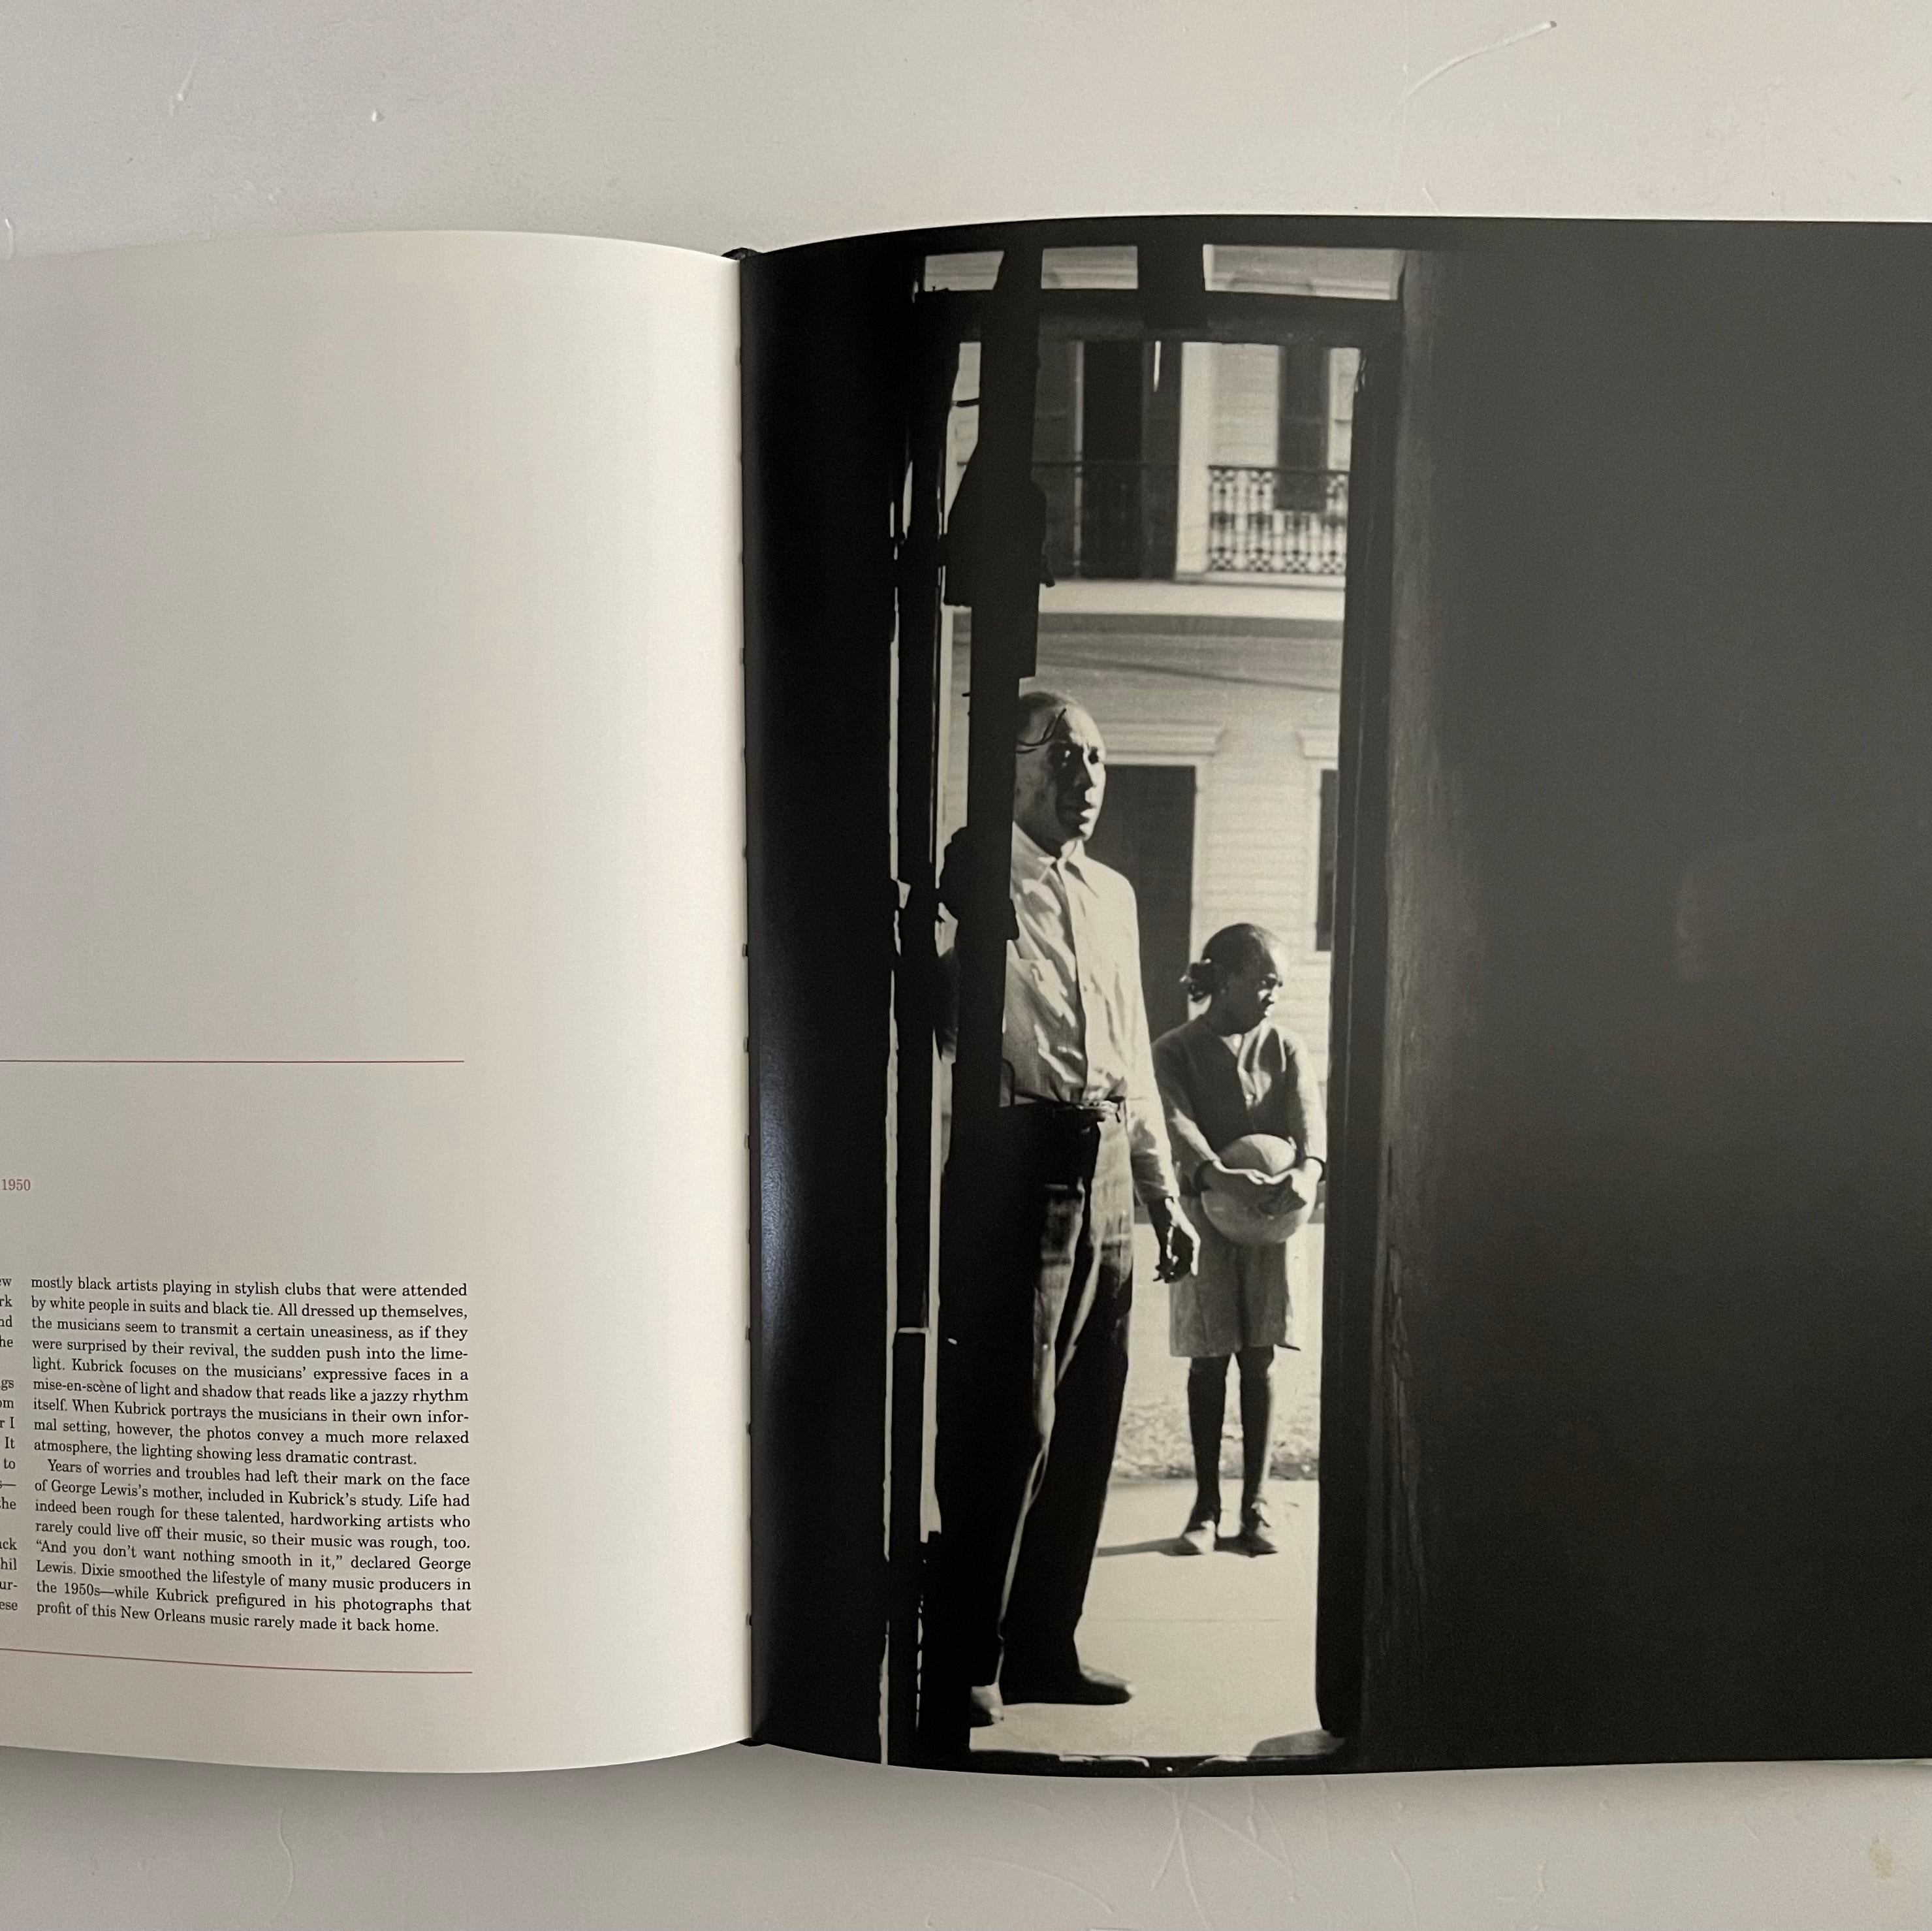 Erste Ausgabe, veröffentlicht von Phaidon, London & New York, 2005. Text auf Englisch. Text von Rainer Crone und Einleitung von Jeff Wall.

Das erste Buch, das die bisher unveröffentlichten Fotografien des berühmten Filmemachers Stanley Kubrick